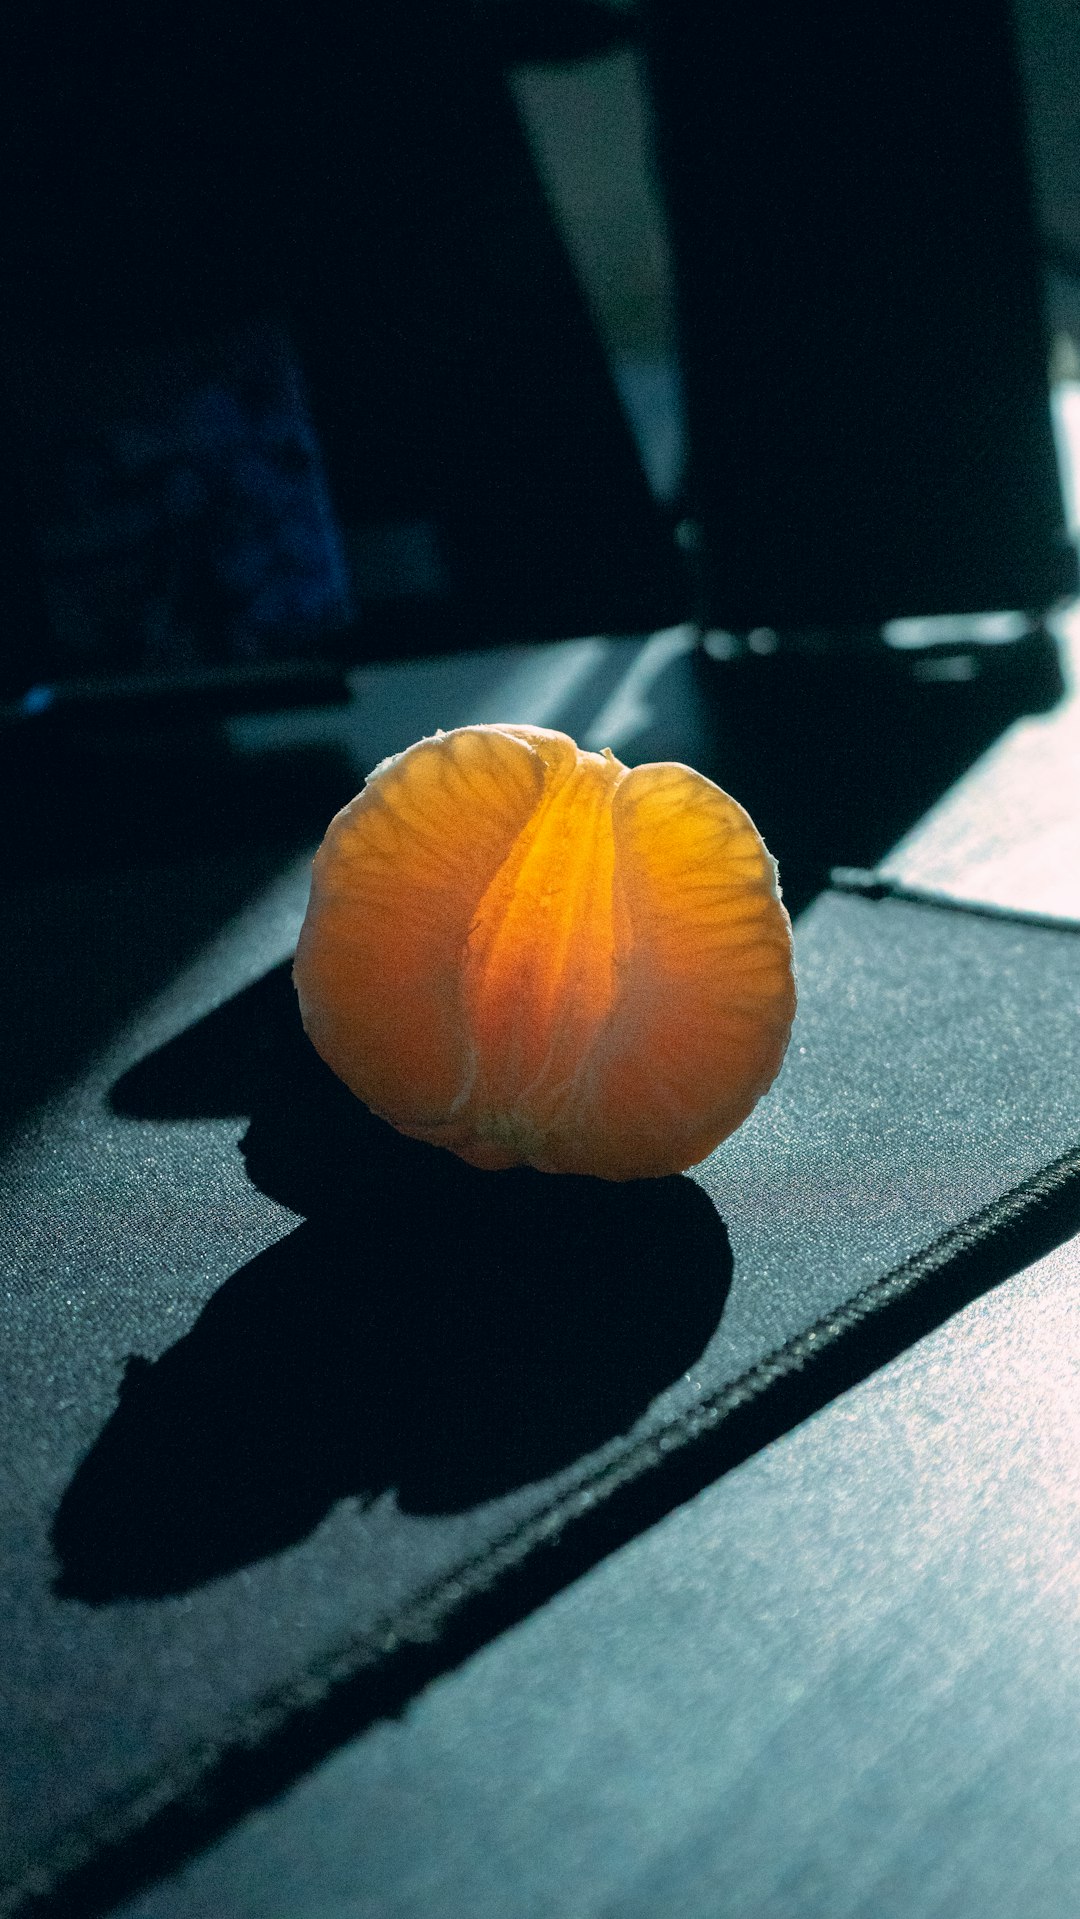 orange fruit on black table